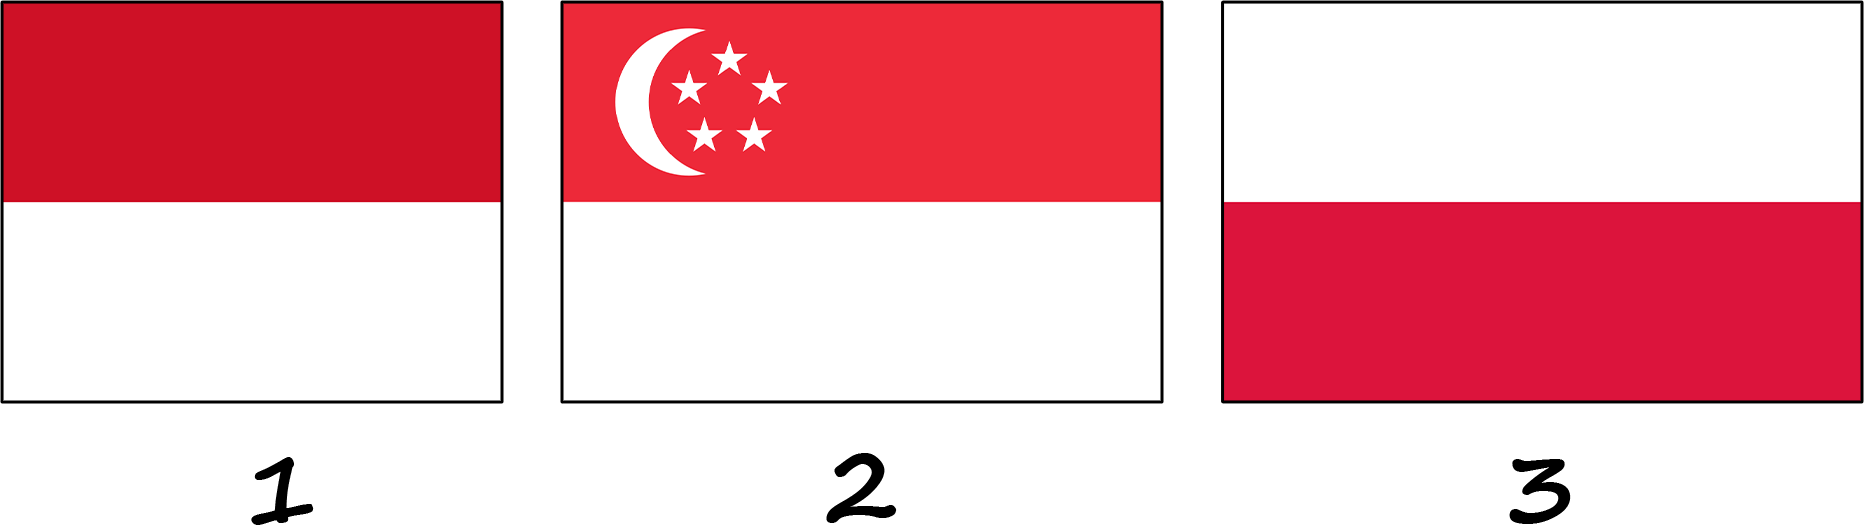 Які прапори схожі з червоно-білим прапором Індонезії?